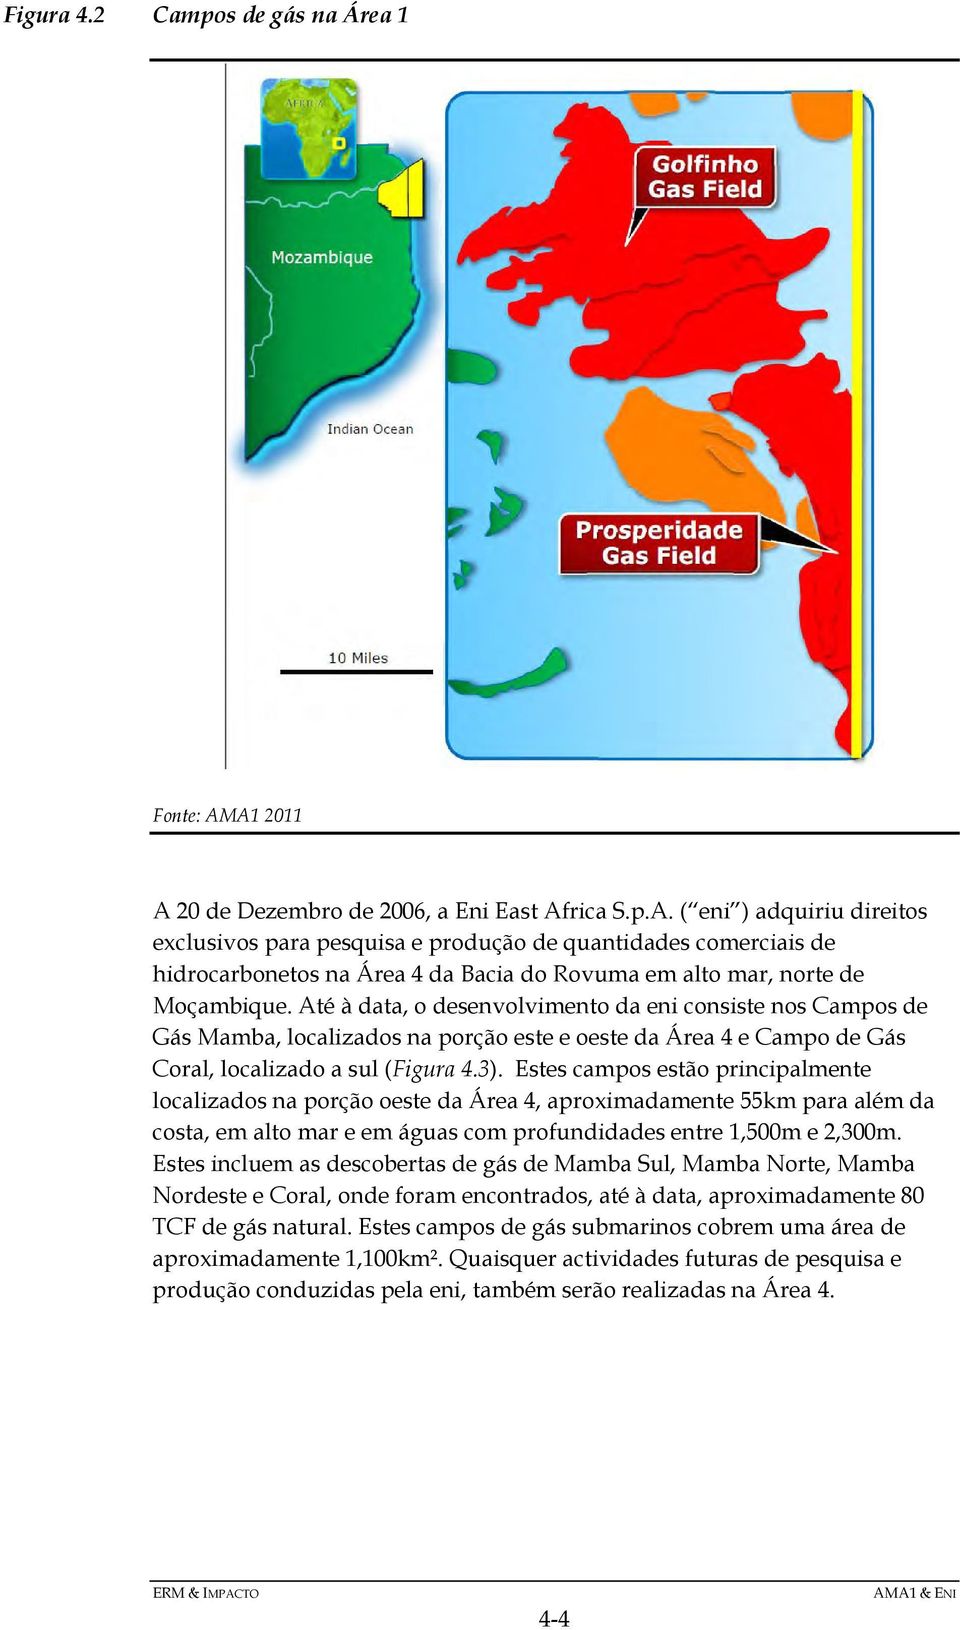 Até à data, o desenvolvimento da eni consiste nos Campos de Gás Mamba, localizados na porção este e oeste da Área 4 e Campo de Gás Coral, localizado a sul (Figura 4.3).